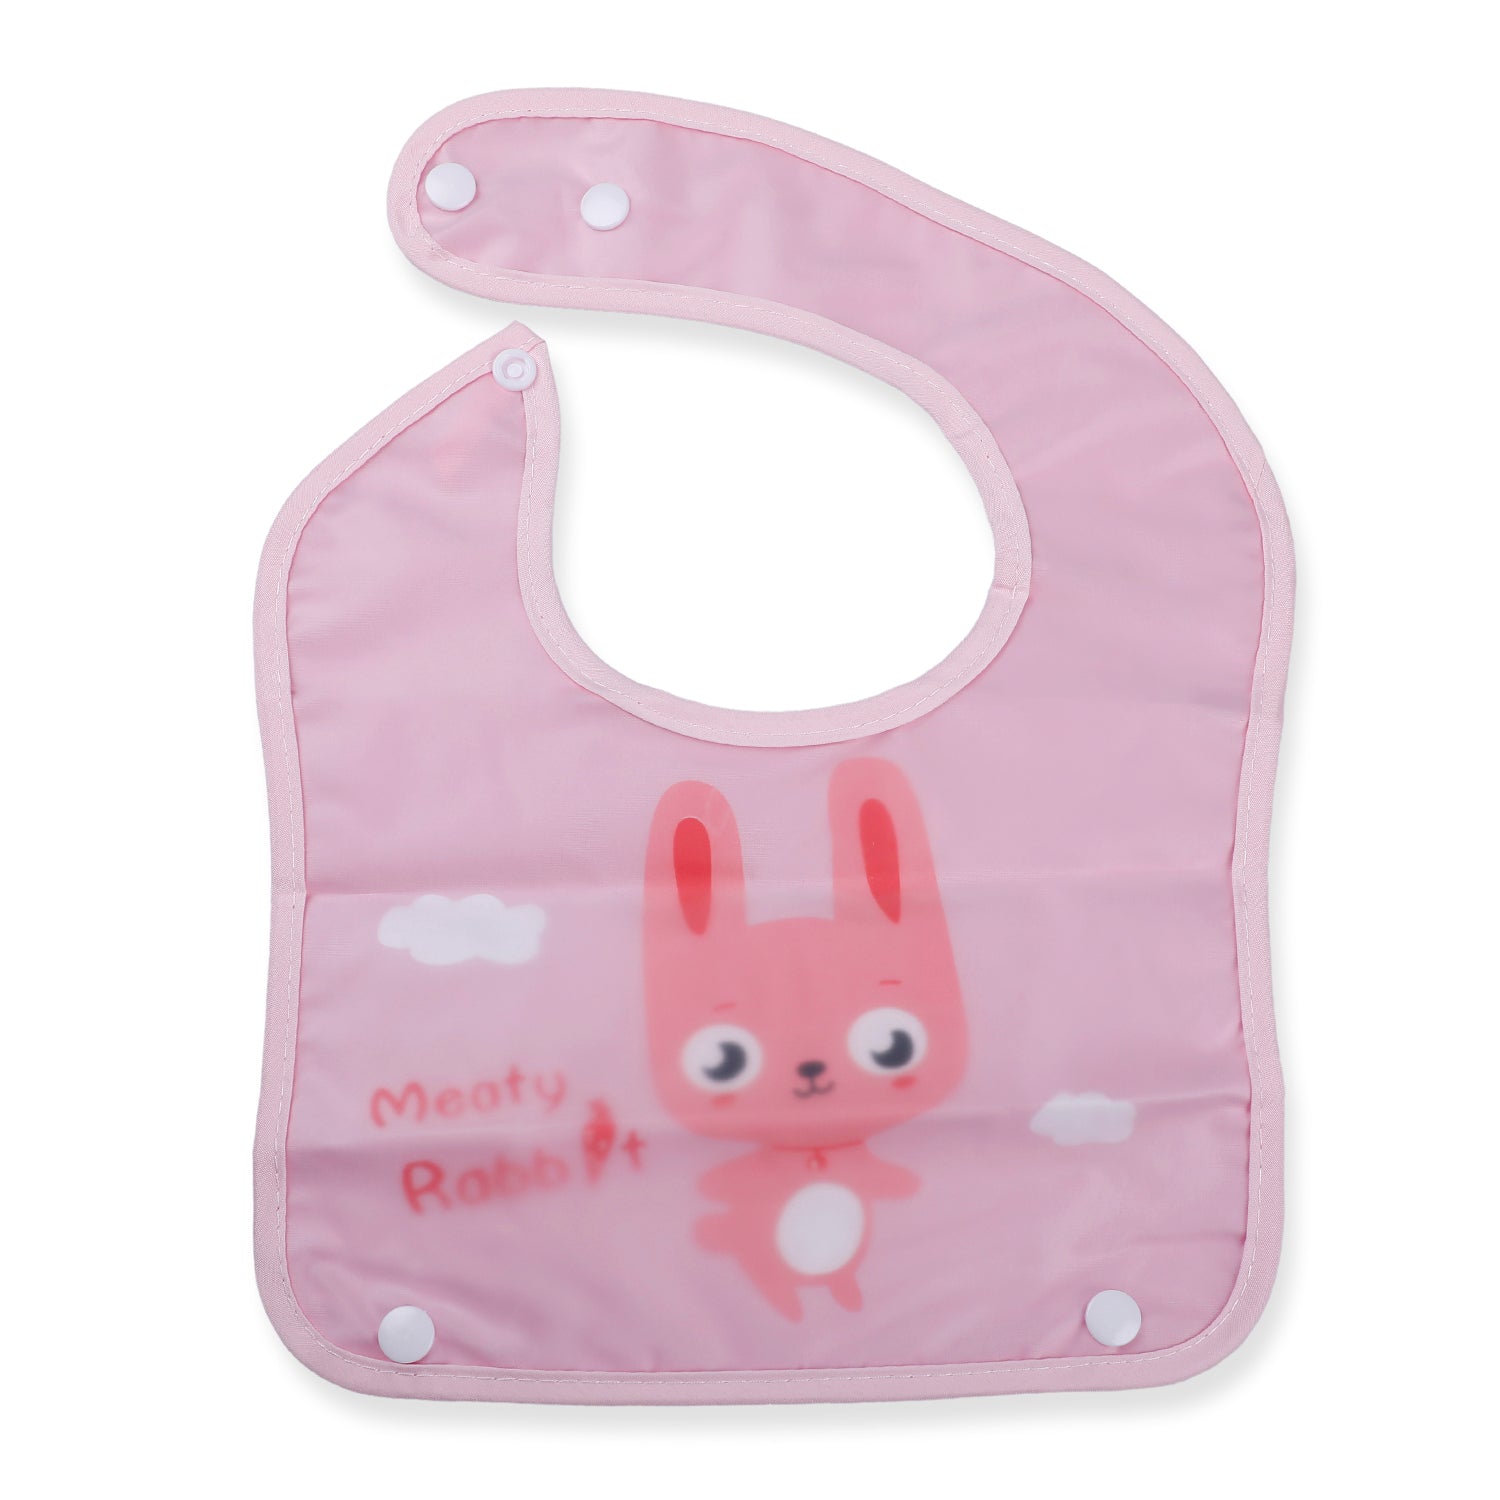 Baby Moo Meaty Rabbit Premium Waterproof Crumb Catcher Bibs - Pink